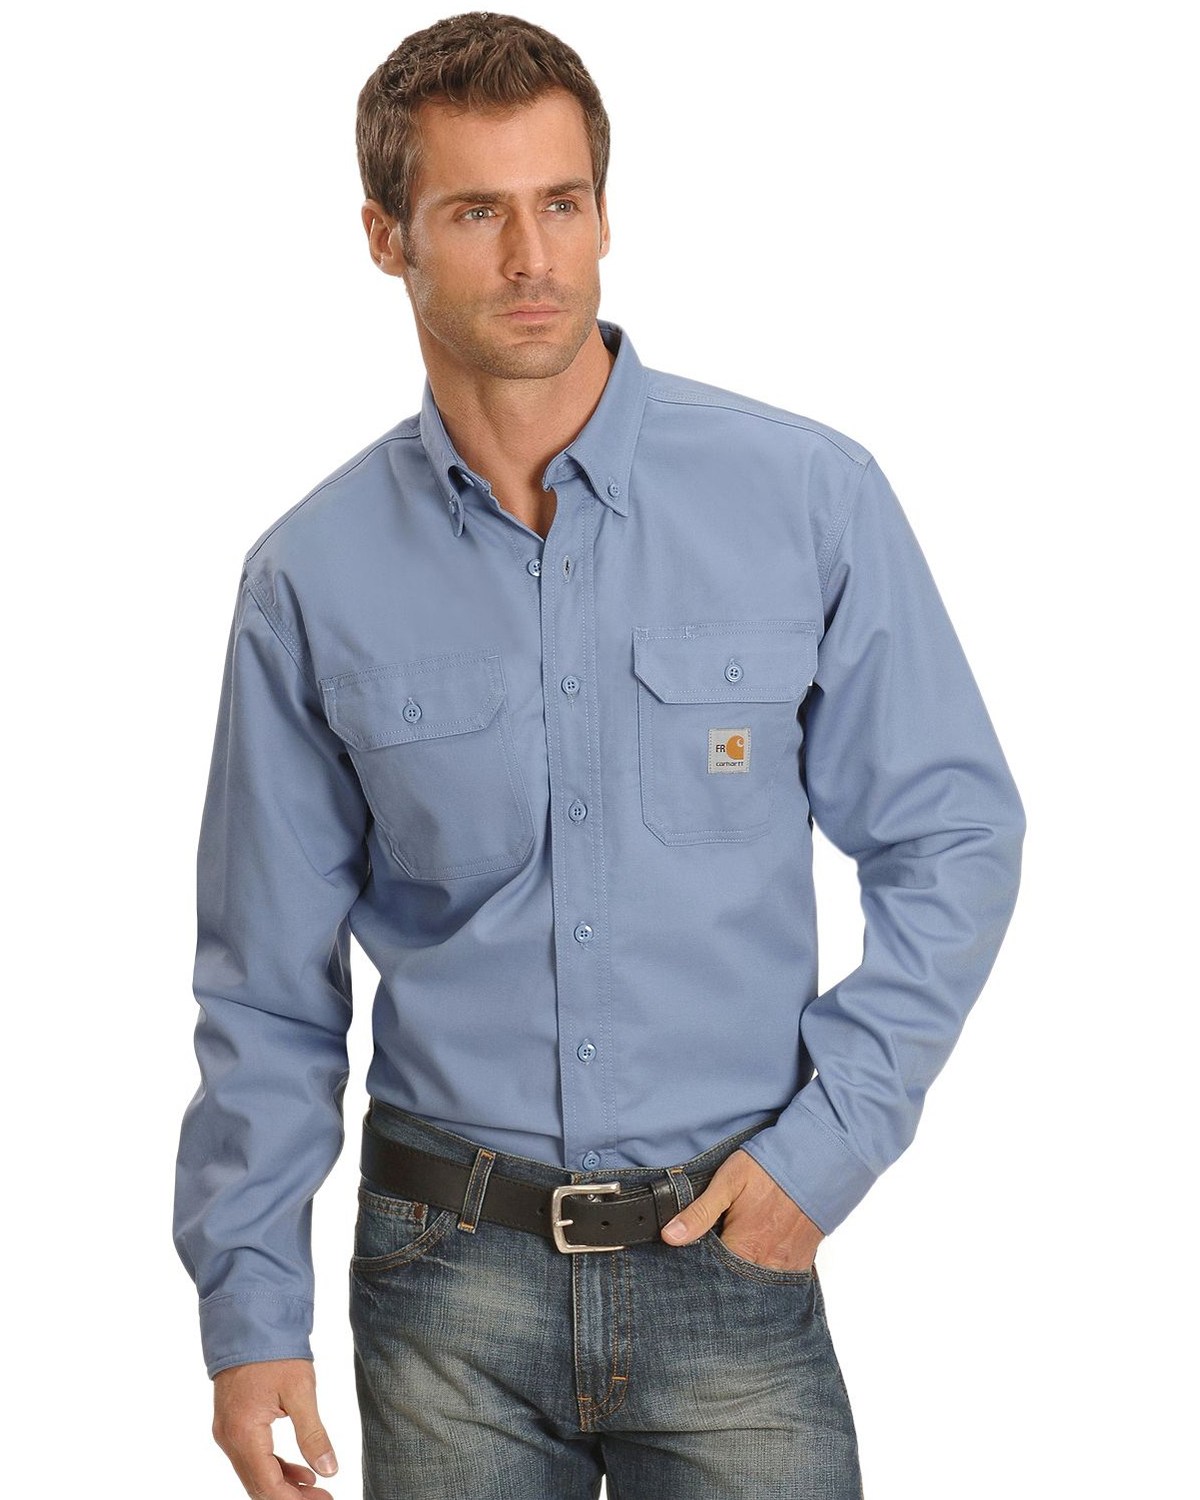 Carhartt Men's FR Solid Long Sleeve Button-Down Work Shirt